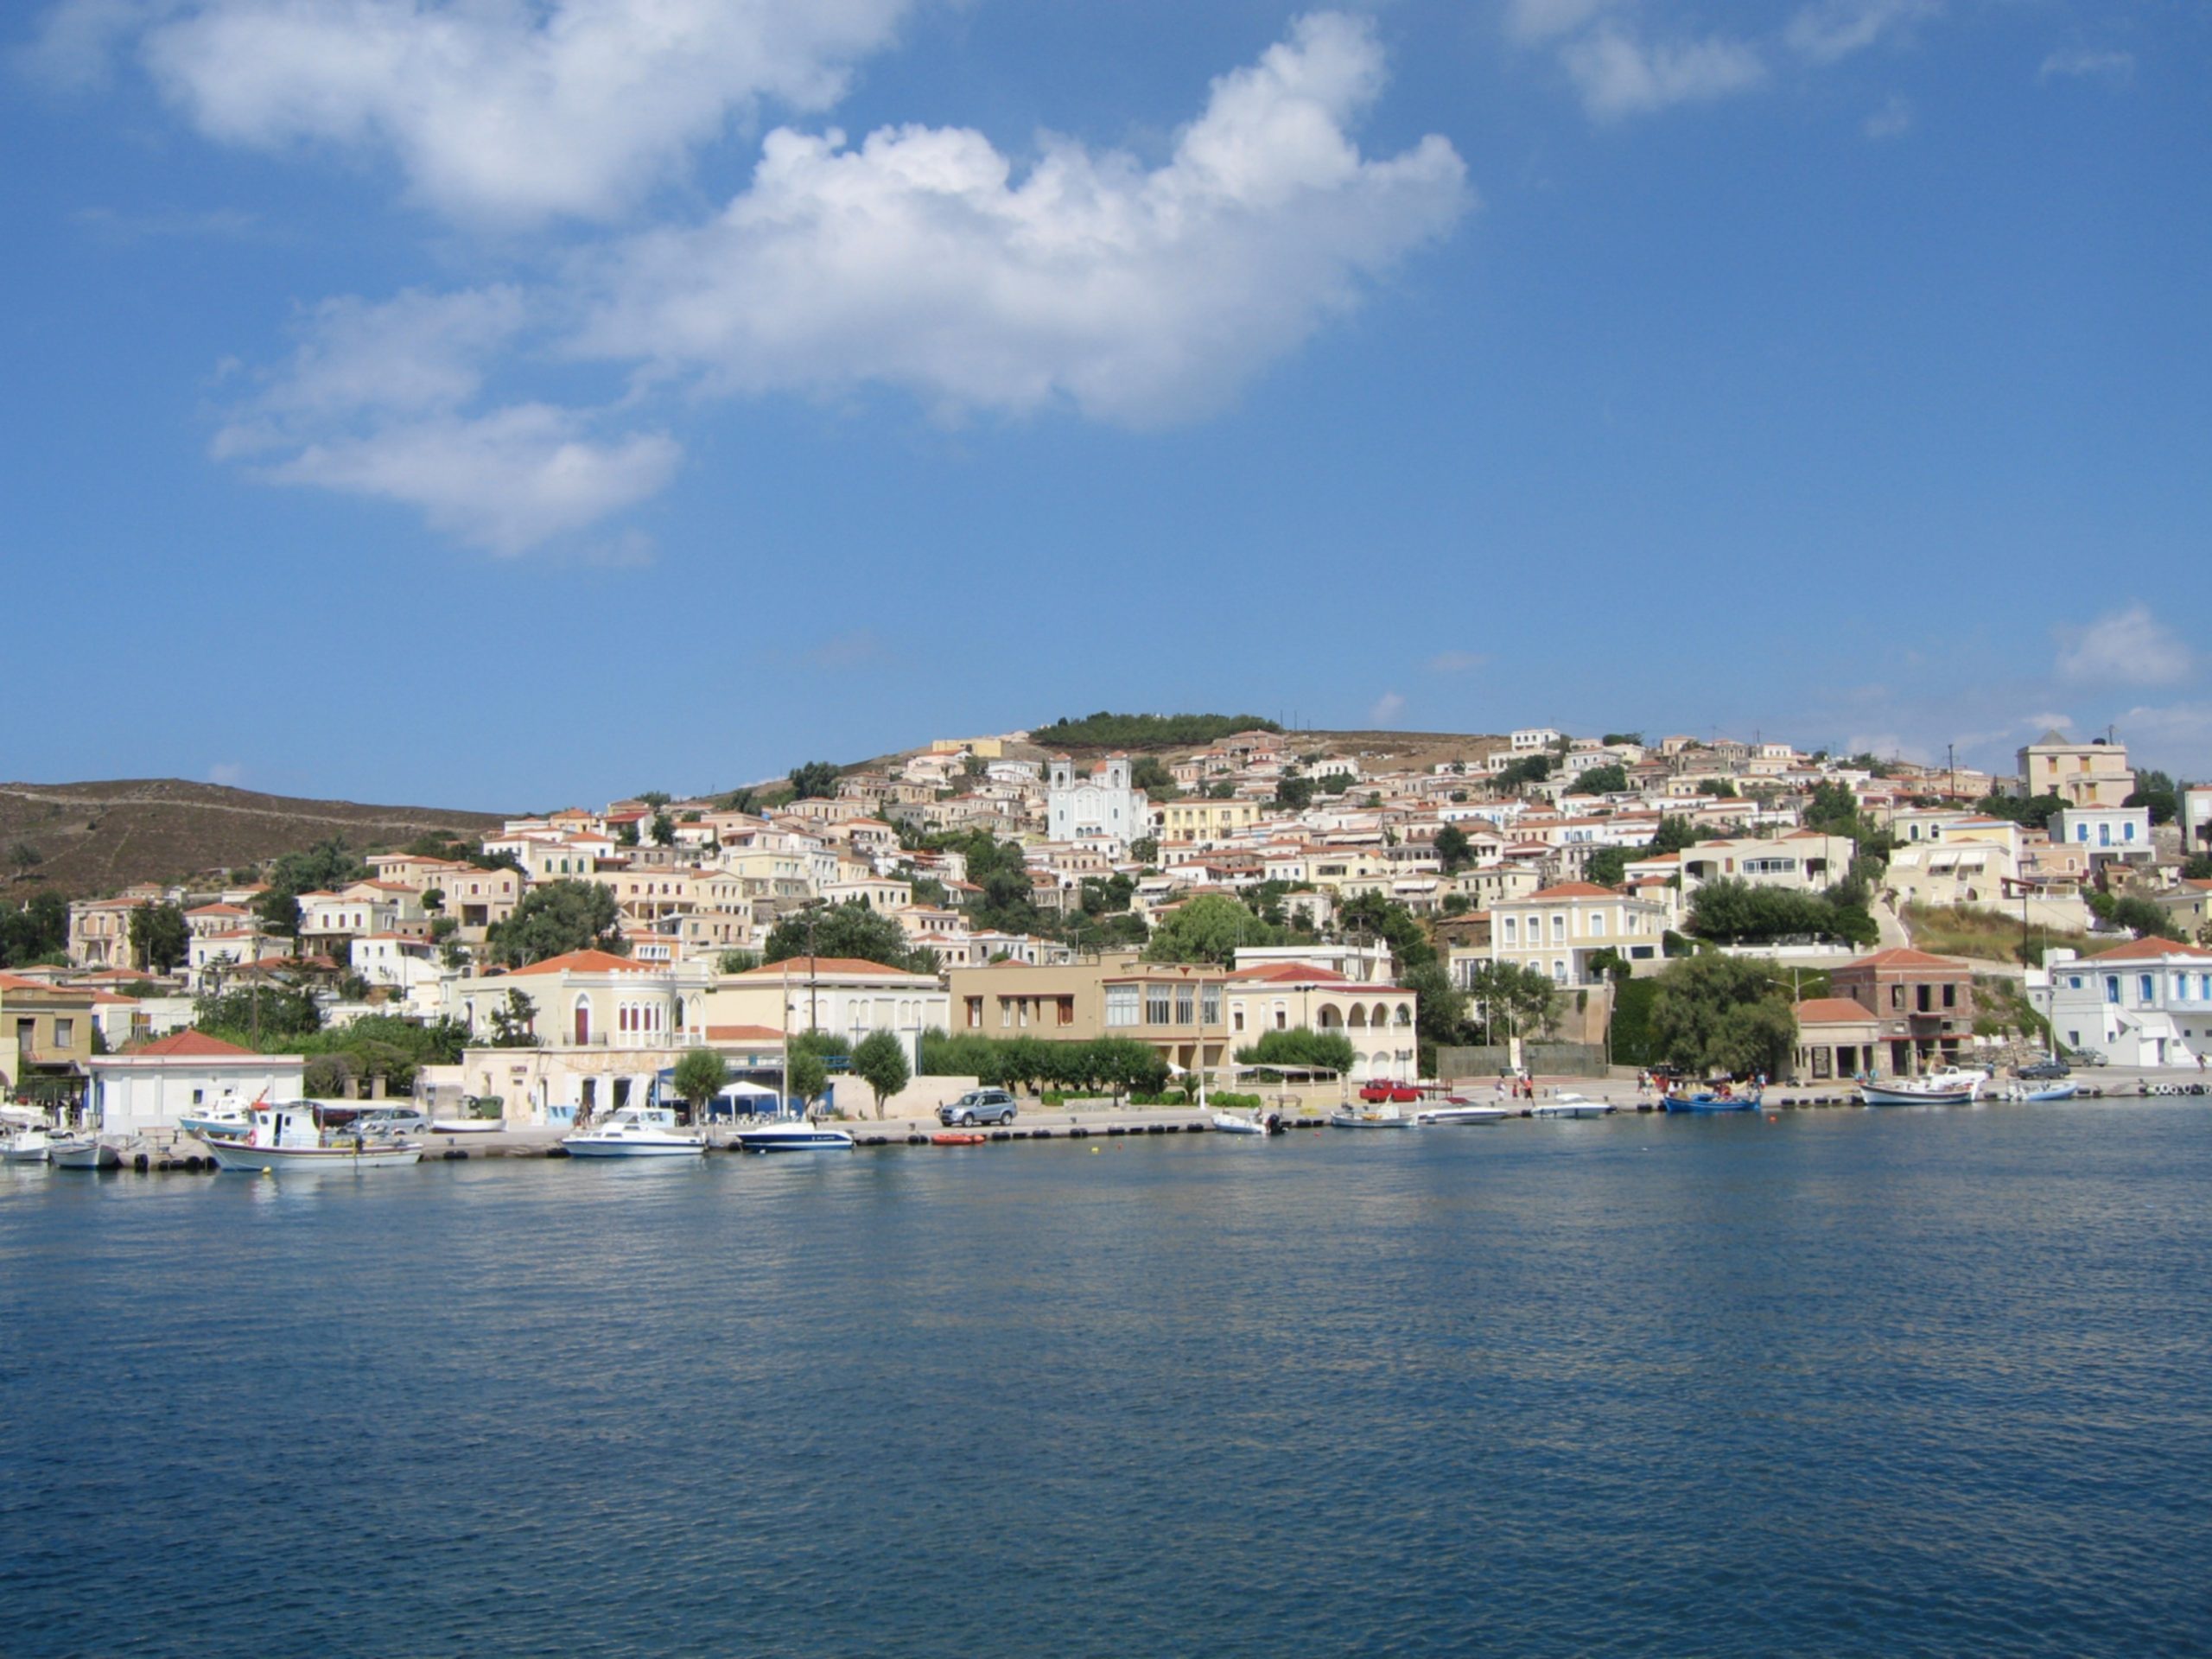 Κι όμως σε αυτό το ελληνικό νησί το 30% των κατοίκων είναι πλούσιοι εφοπλιστές